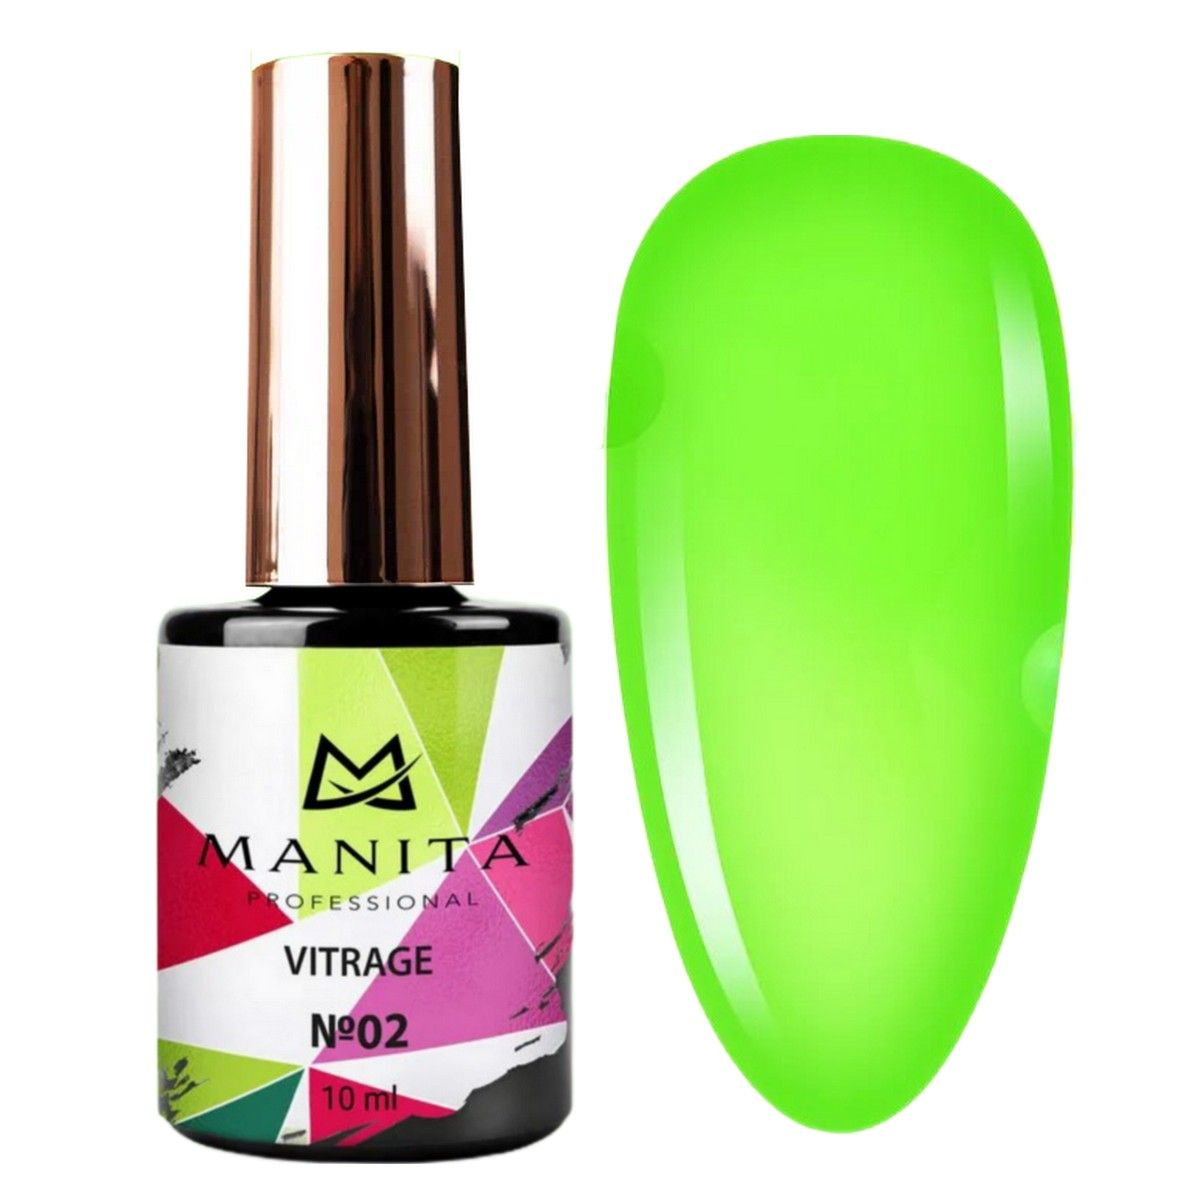 Гель-лак для ногтей Manita Professional c эффектом витража Vitrage №02, зеленый, 10 мл manita гель лак для ногтей opal